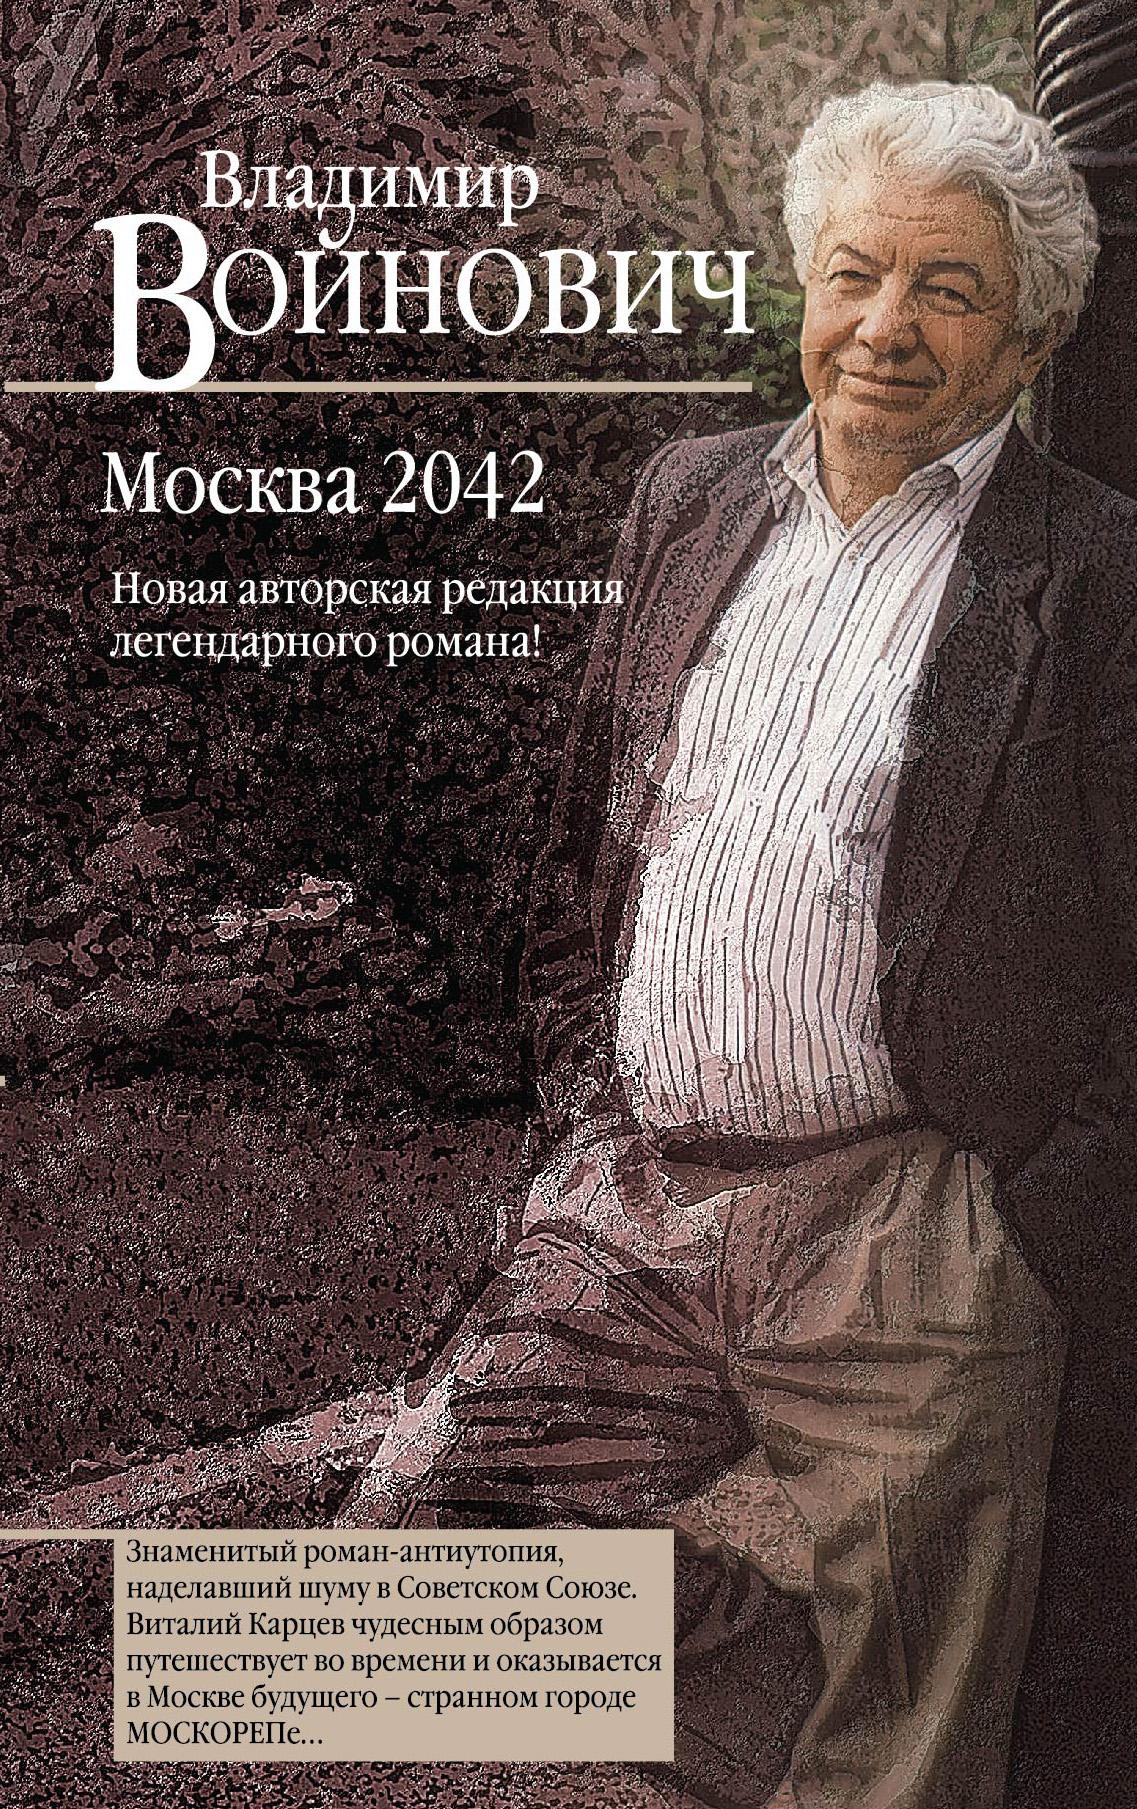 МОСКВА 2042